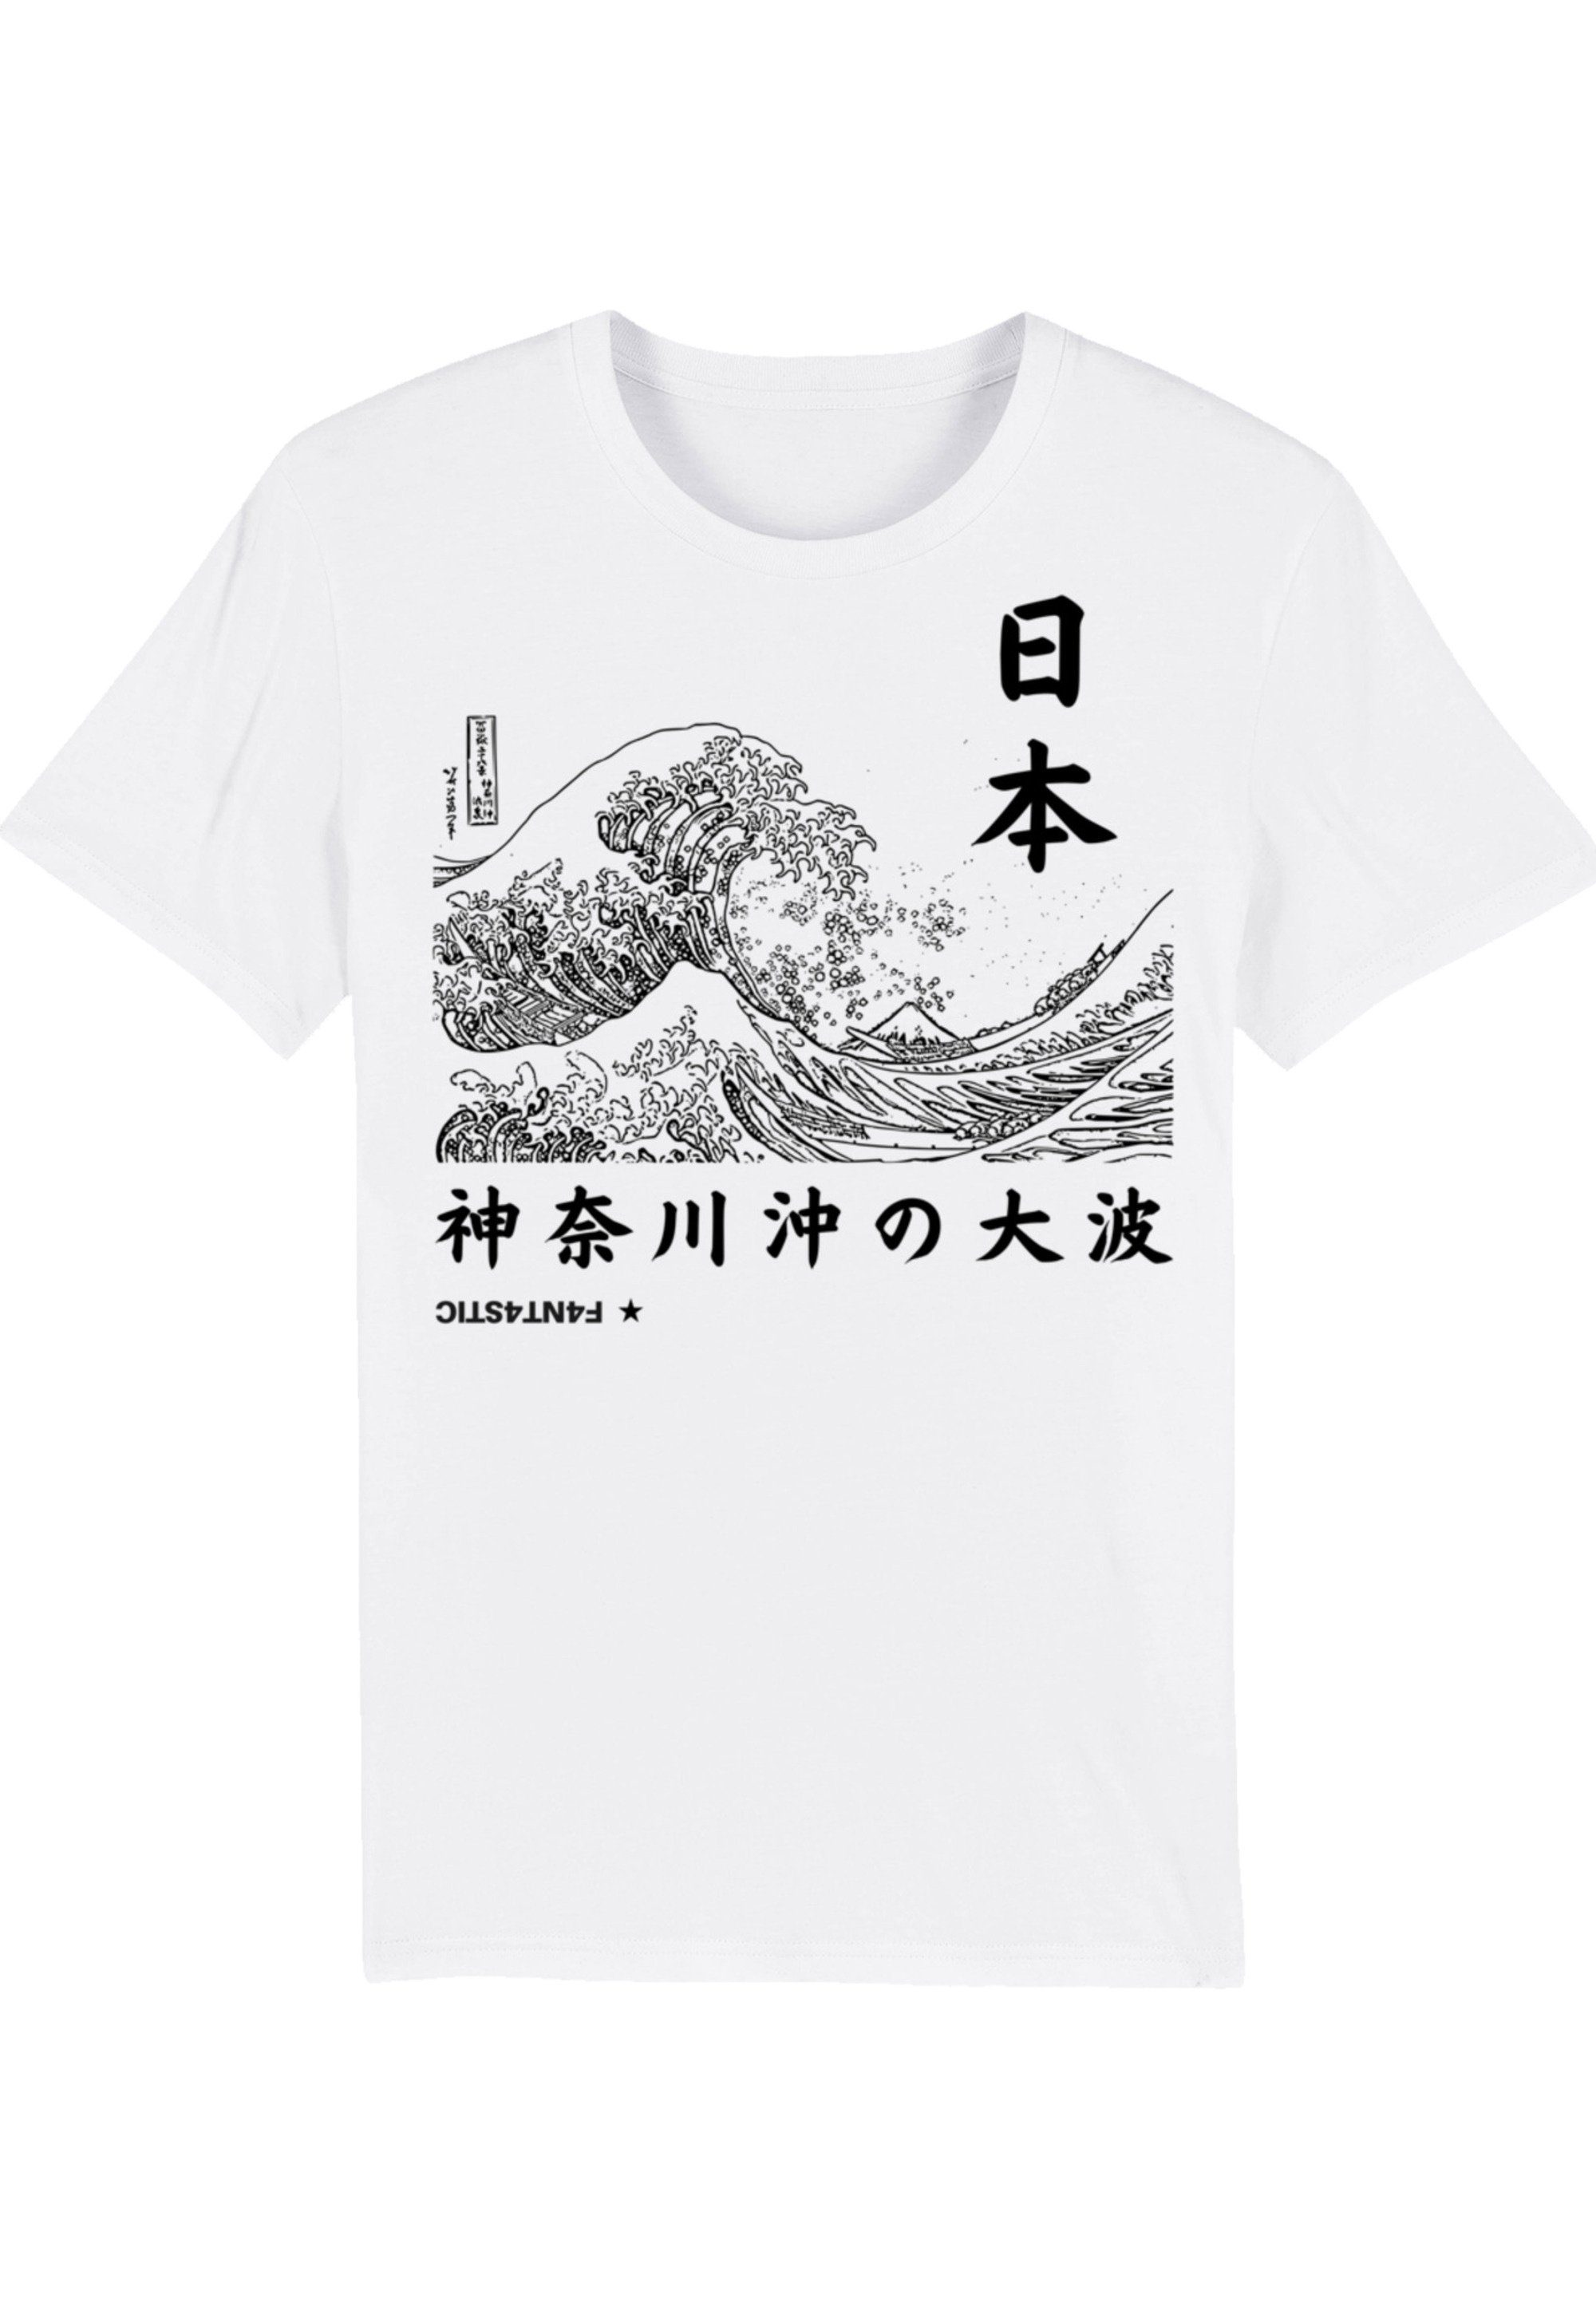 T-Shirt Hochwertige Kanagawa und Baumwolle umweltfreundliche Print, F4NT4STIC Japan Welle